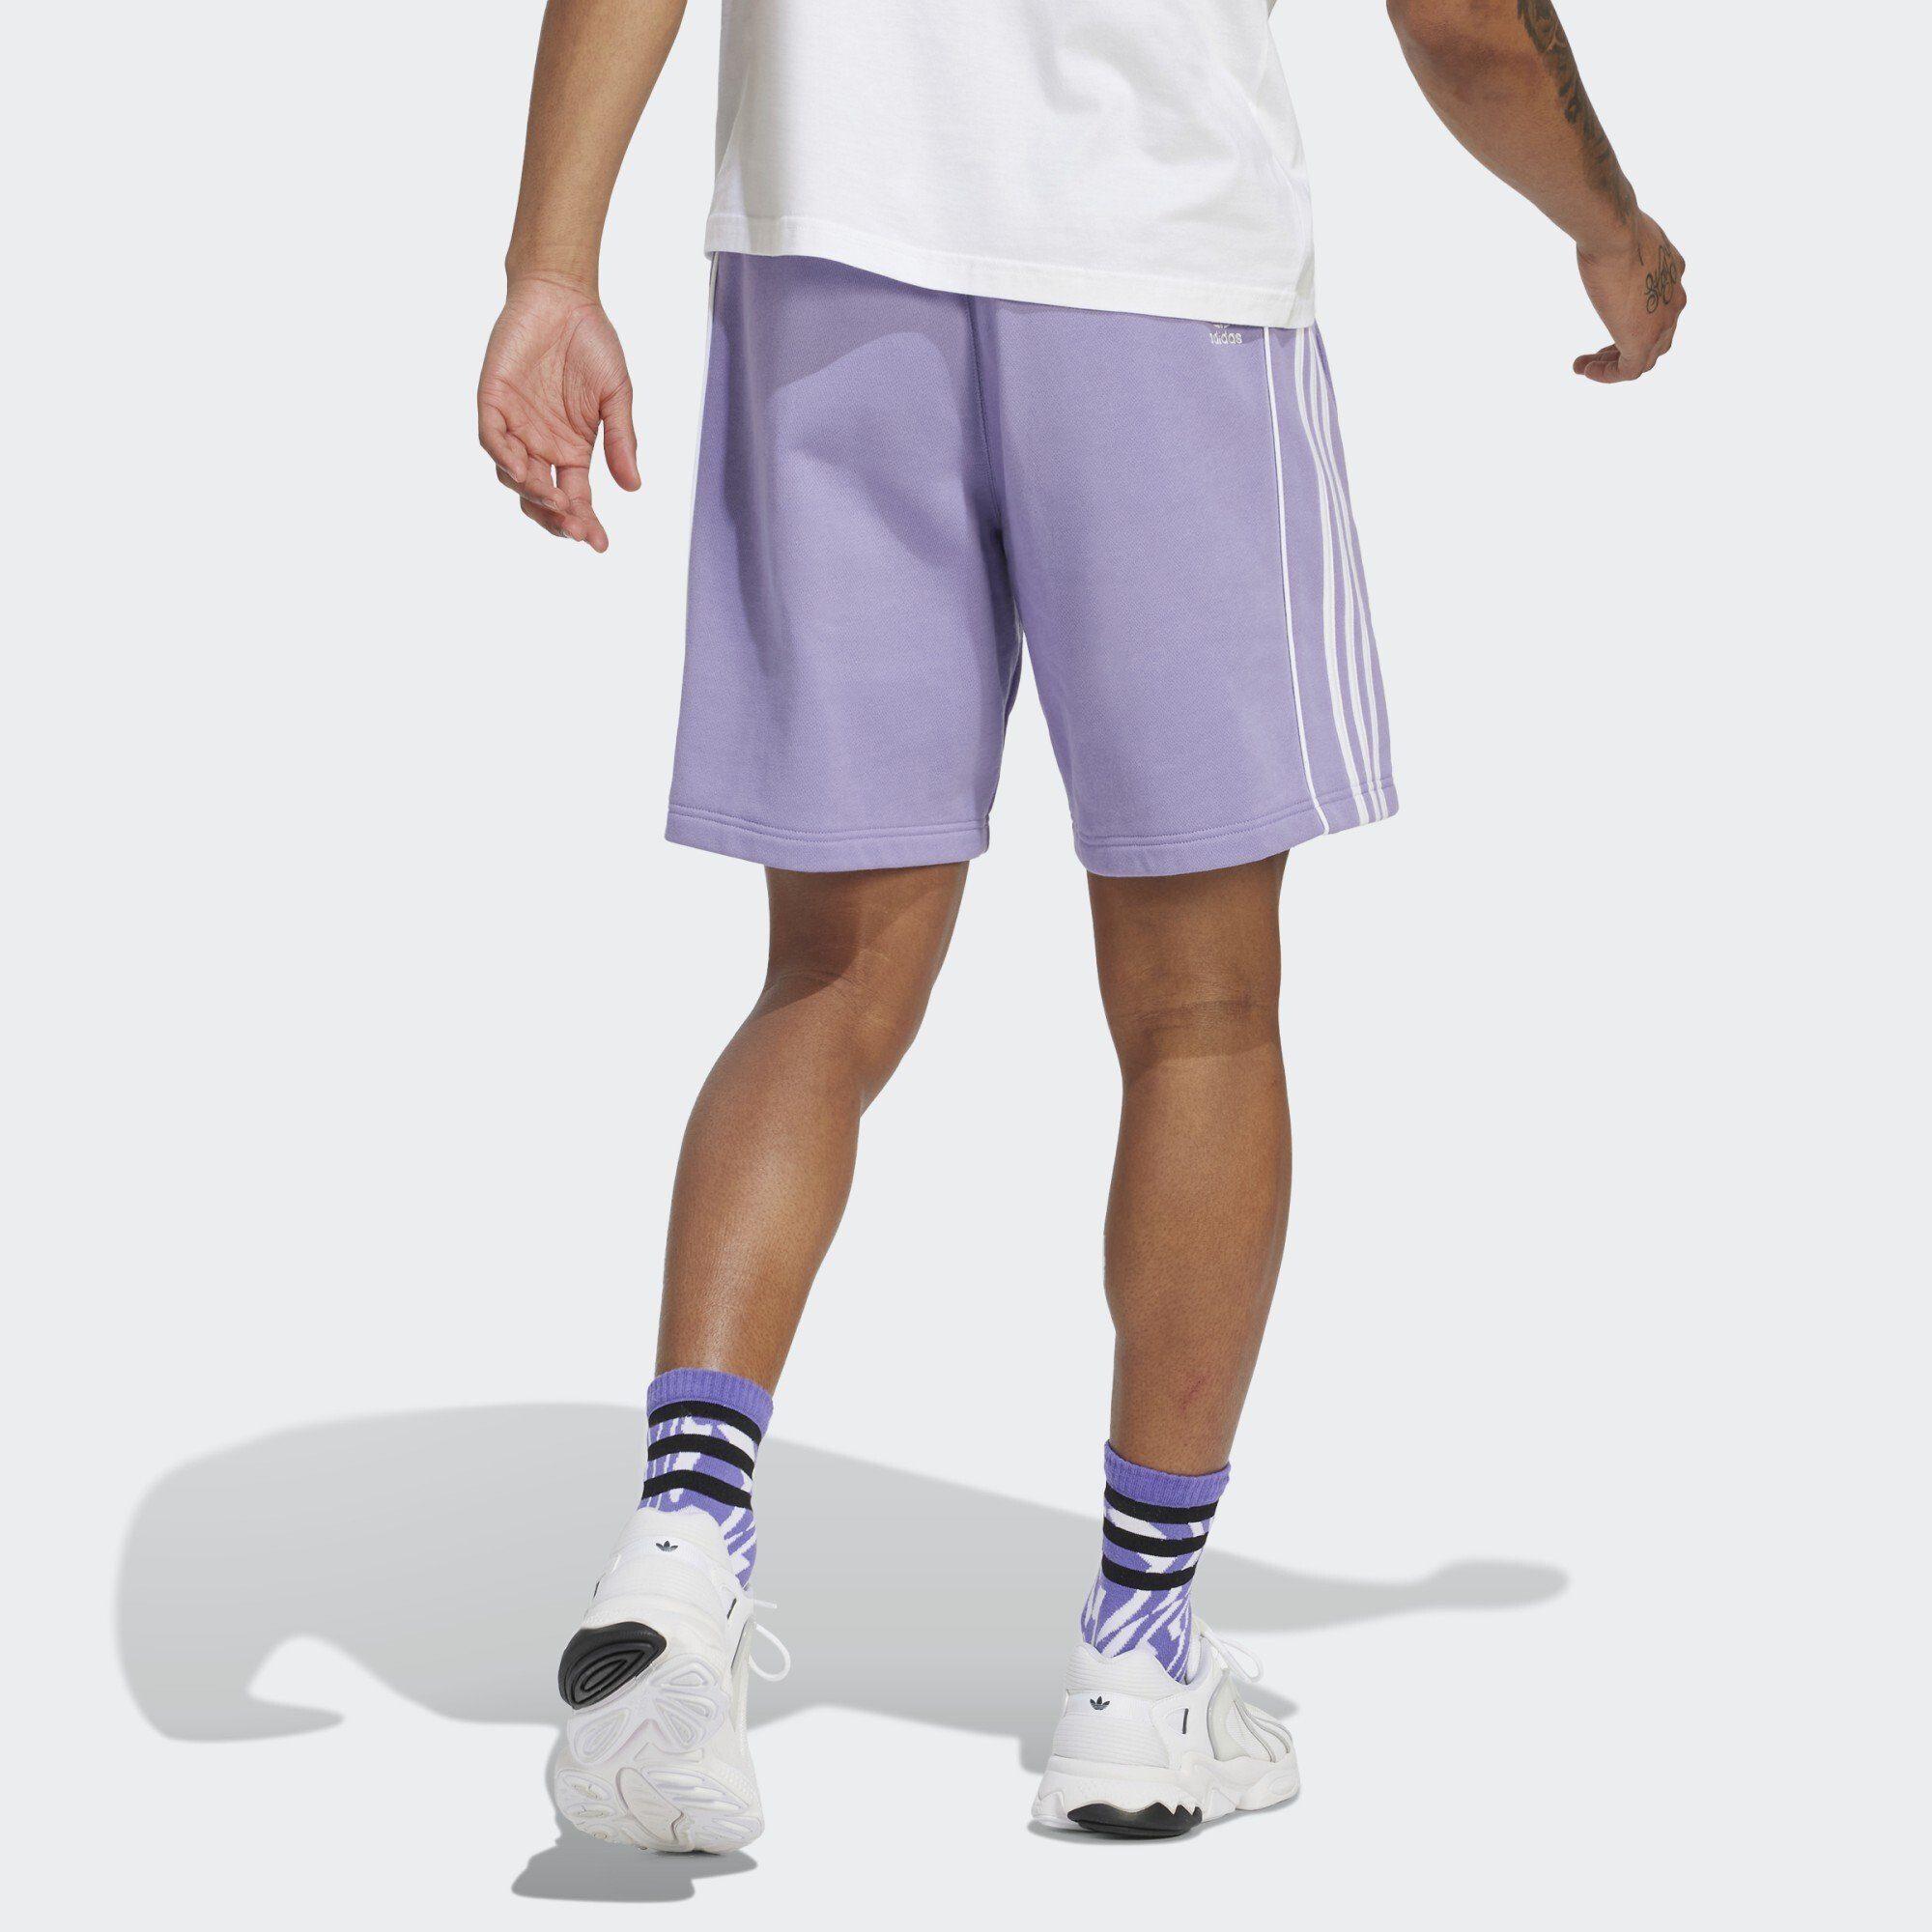 Magic SHORTS Lilac REKIVE Shorts Originals ADIDAS adidas